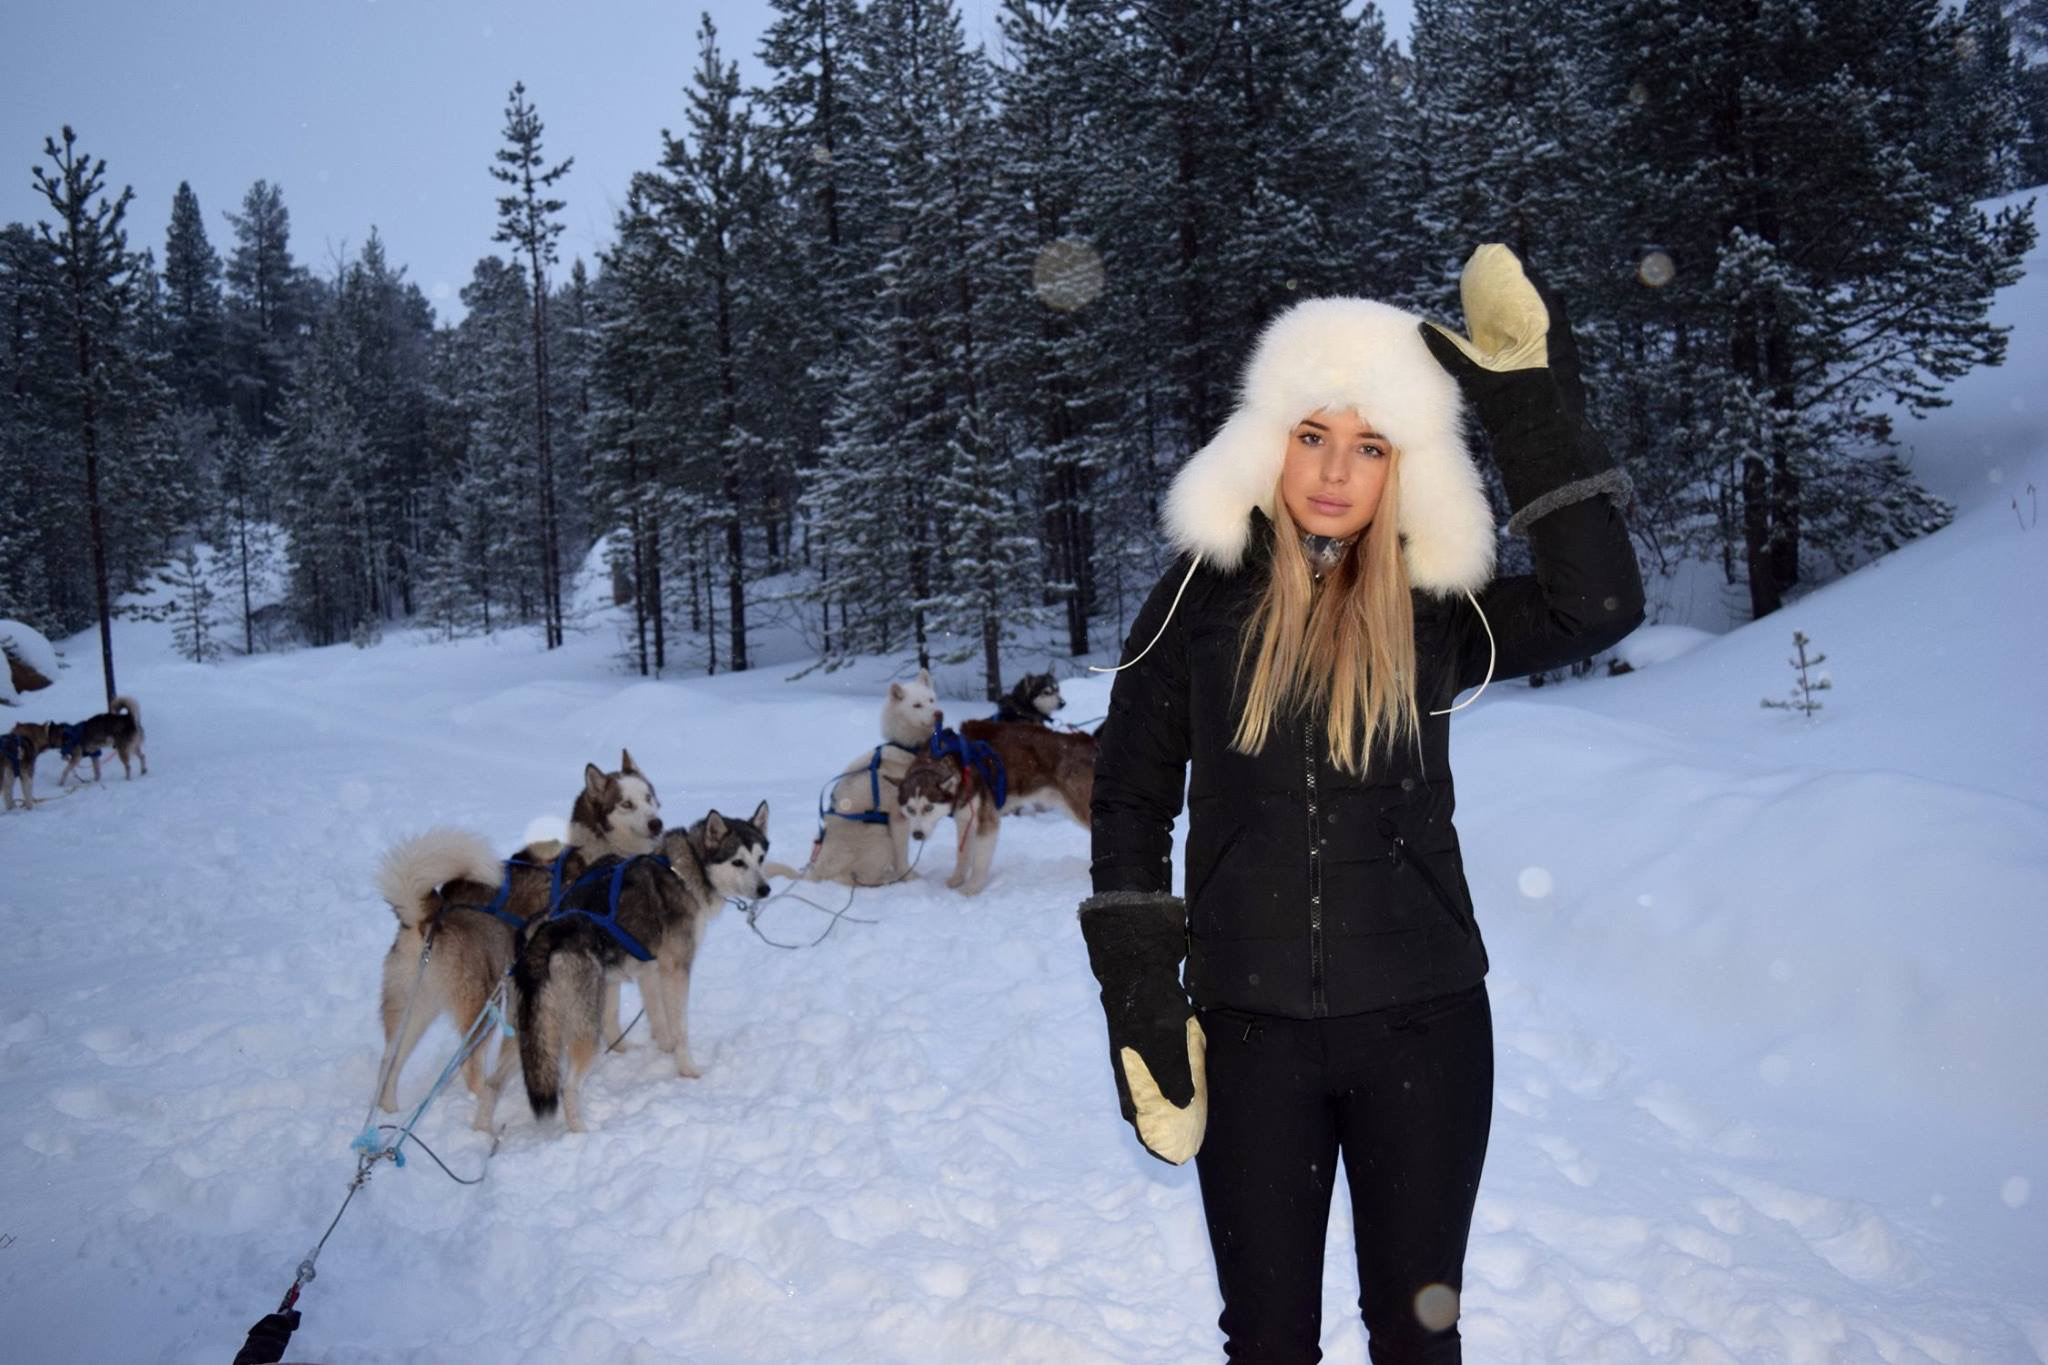 Kakslauttanen arctic resort husky sledding